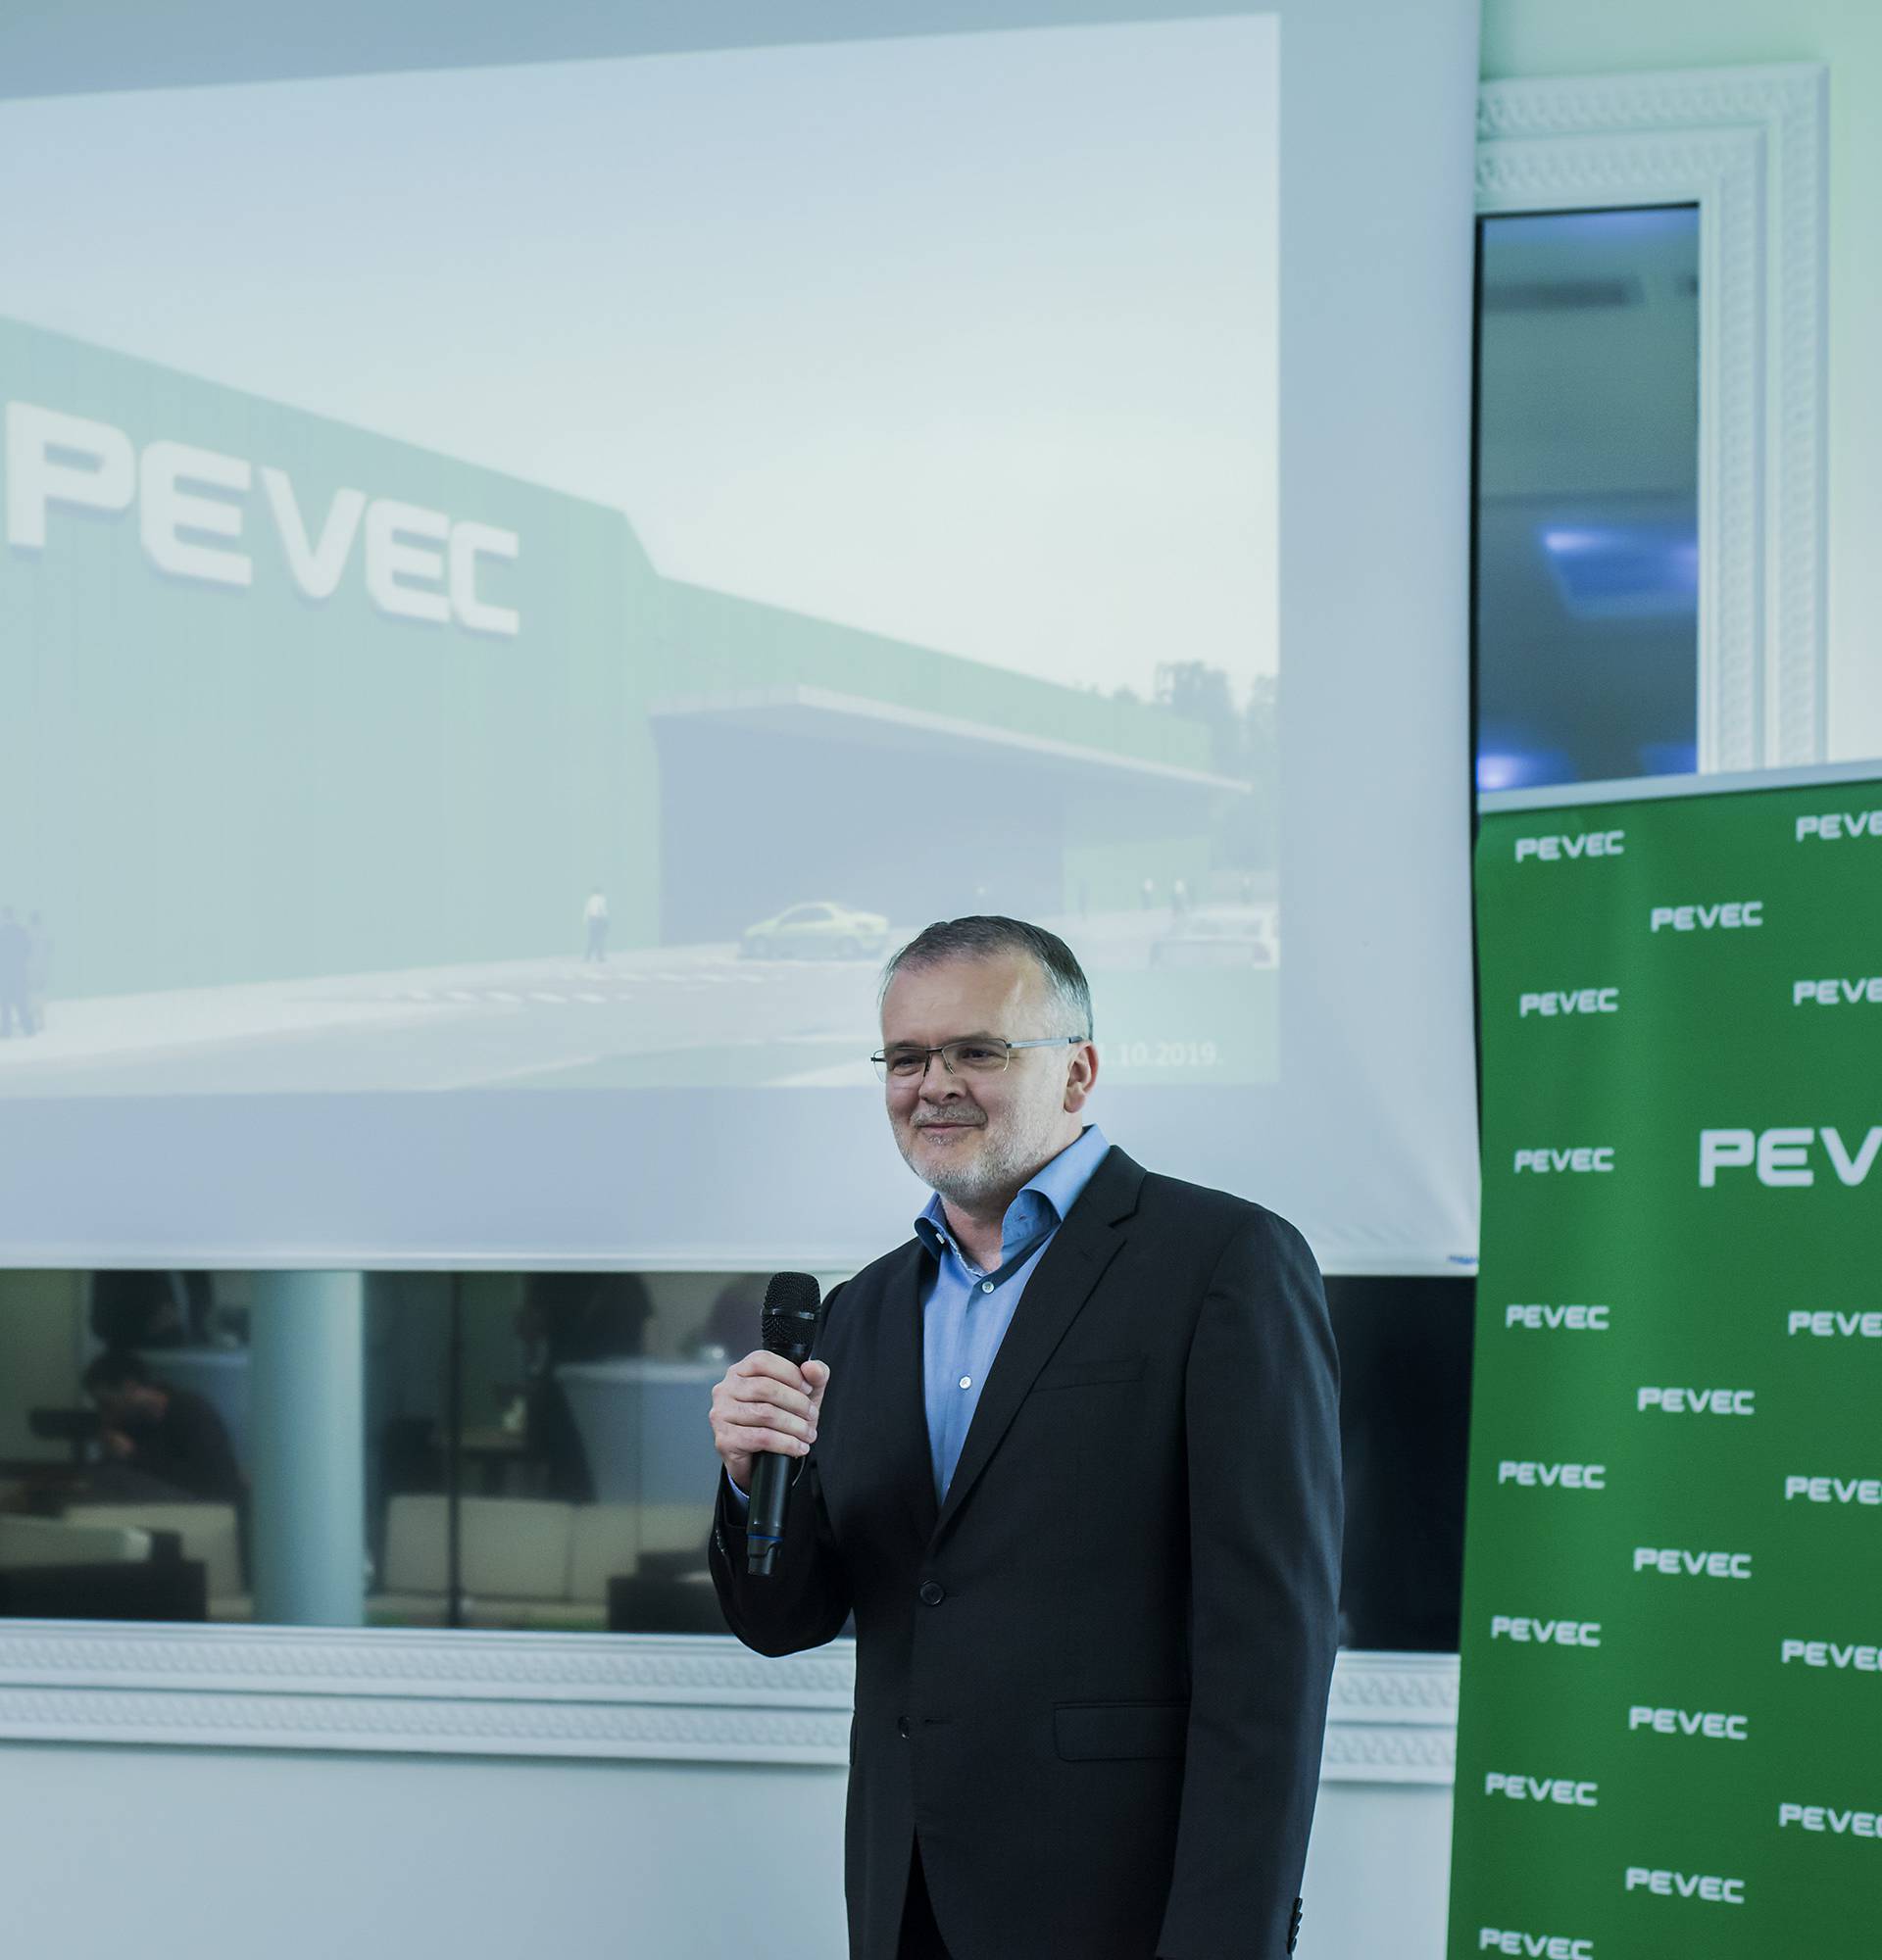 Tvrtka Pevec d.d. povećala prihode i dobit u prošloj godini